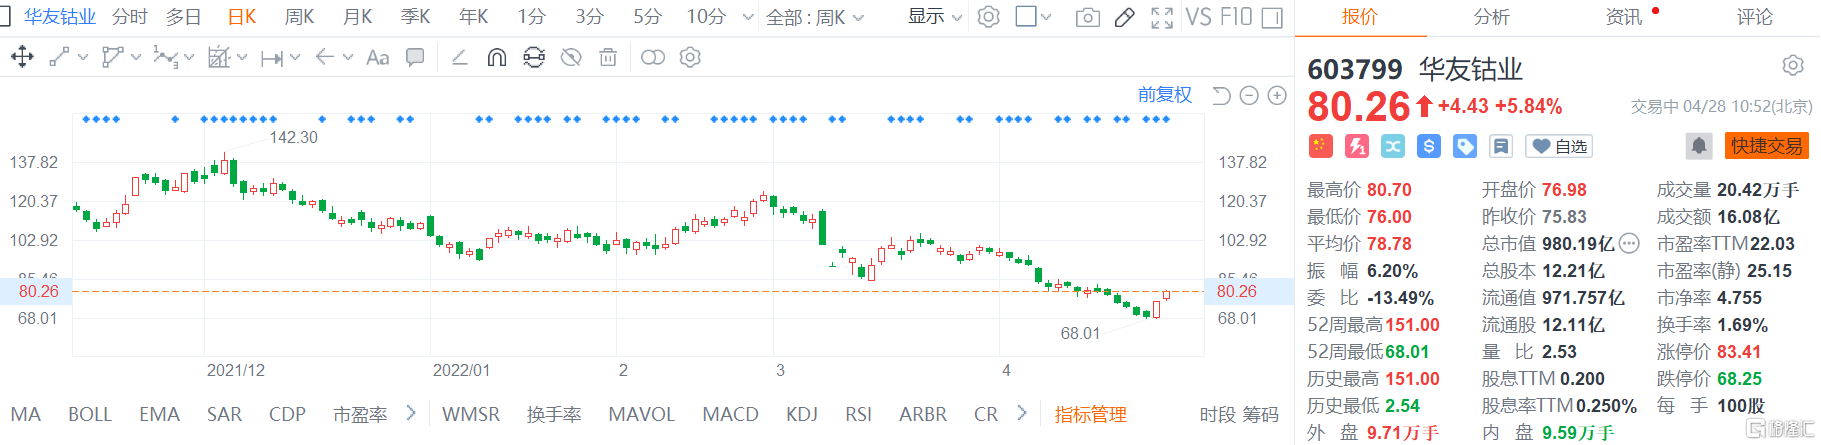 华友钴业(603799.SH)股价继续回升 现报80.26元涨幅5.8%